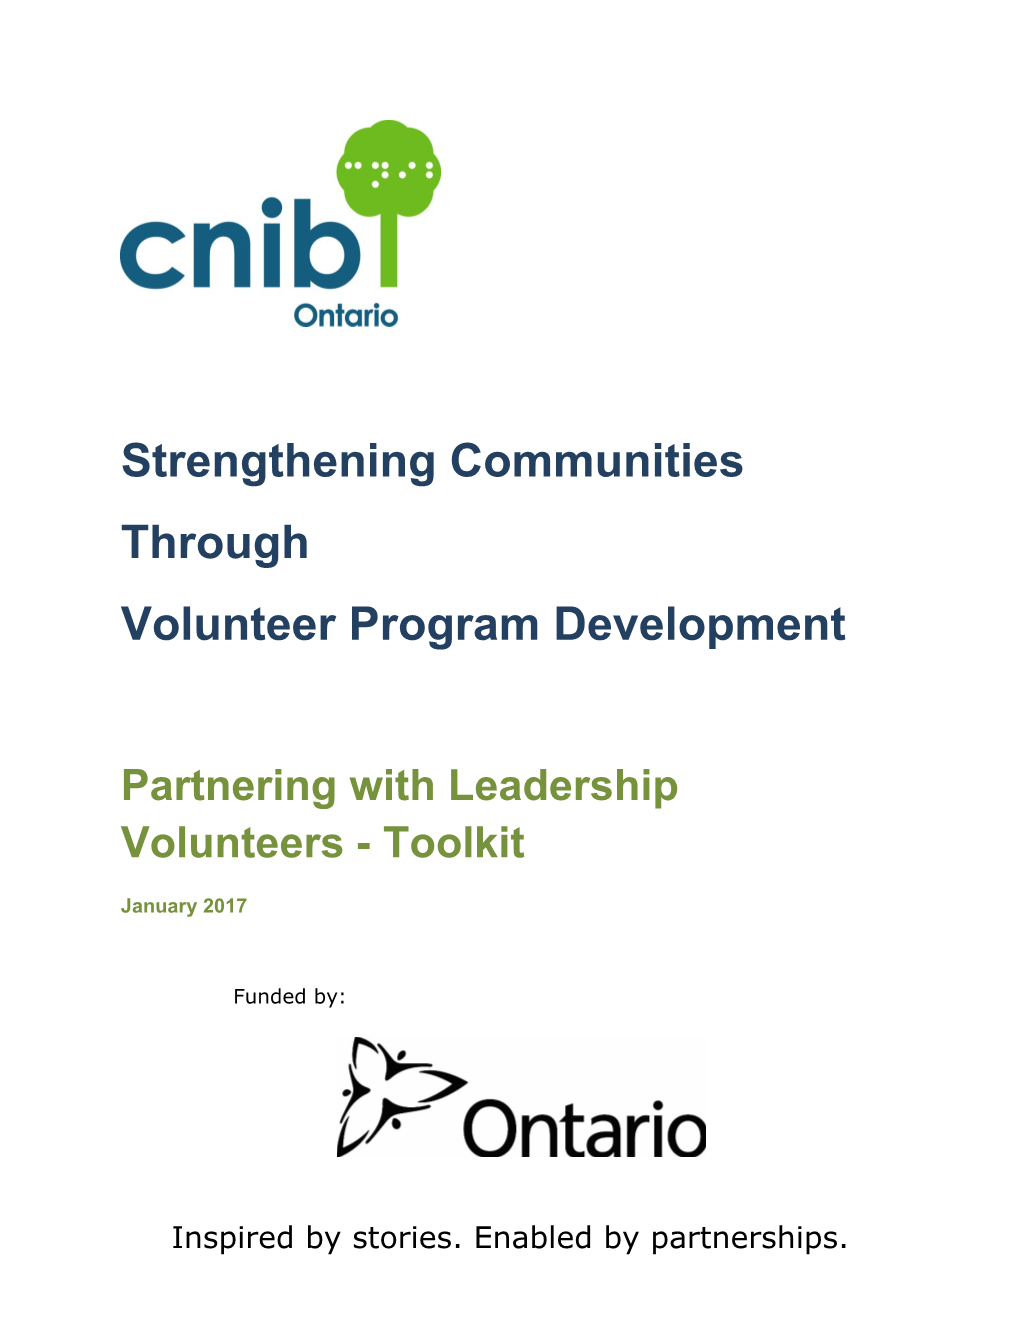 Partnering with Leadership Volunteers - Toolkit